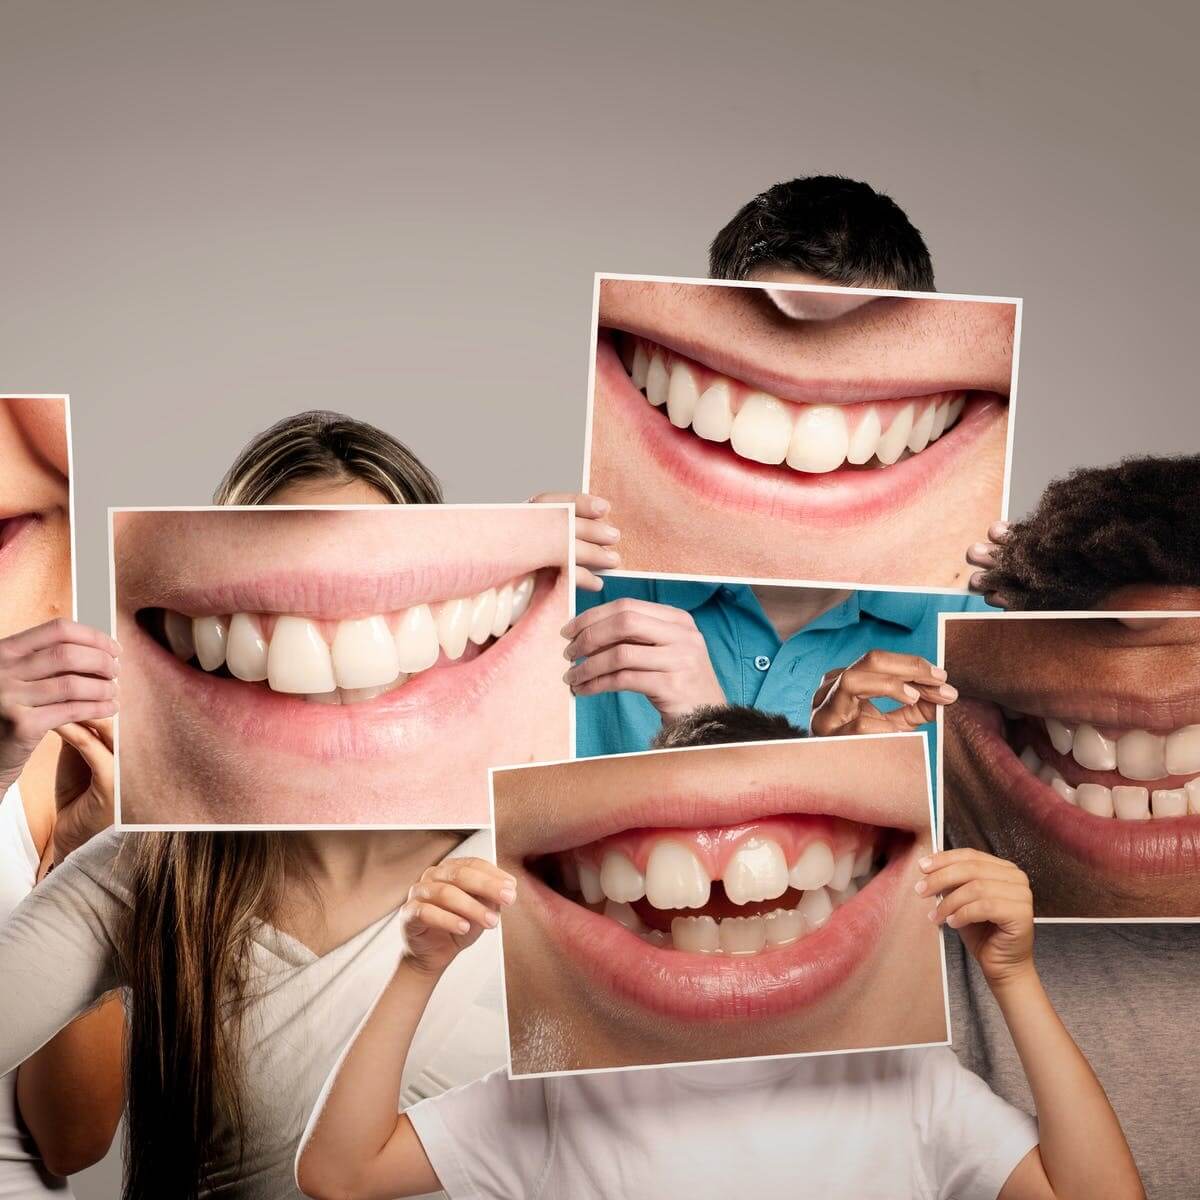 سالم و تمیز بودن دندان‌ها در زیبایی چهره افراد تاثیر دارد.